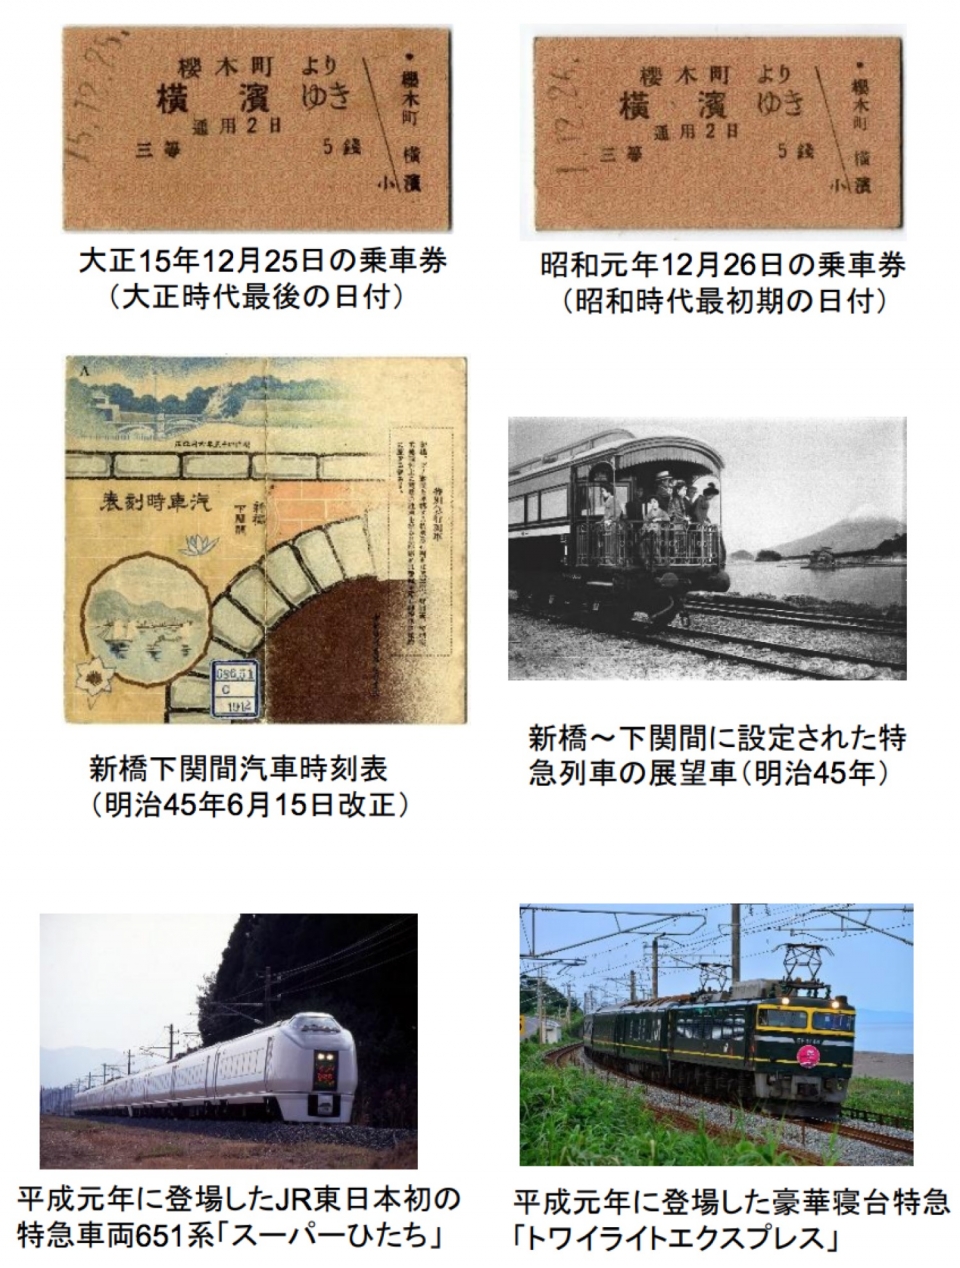 鉄道博物館、大正・昭和・平成の改元時に関連する鉄道資料を展示 